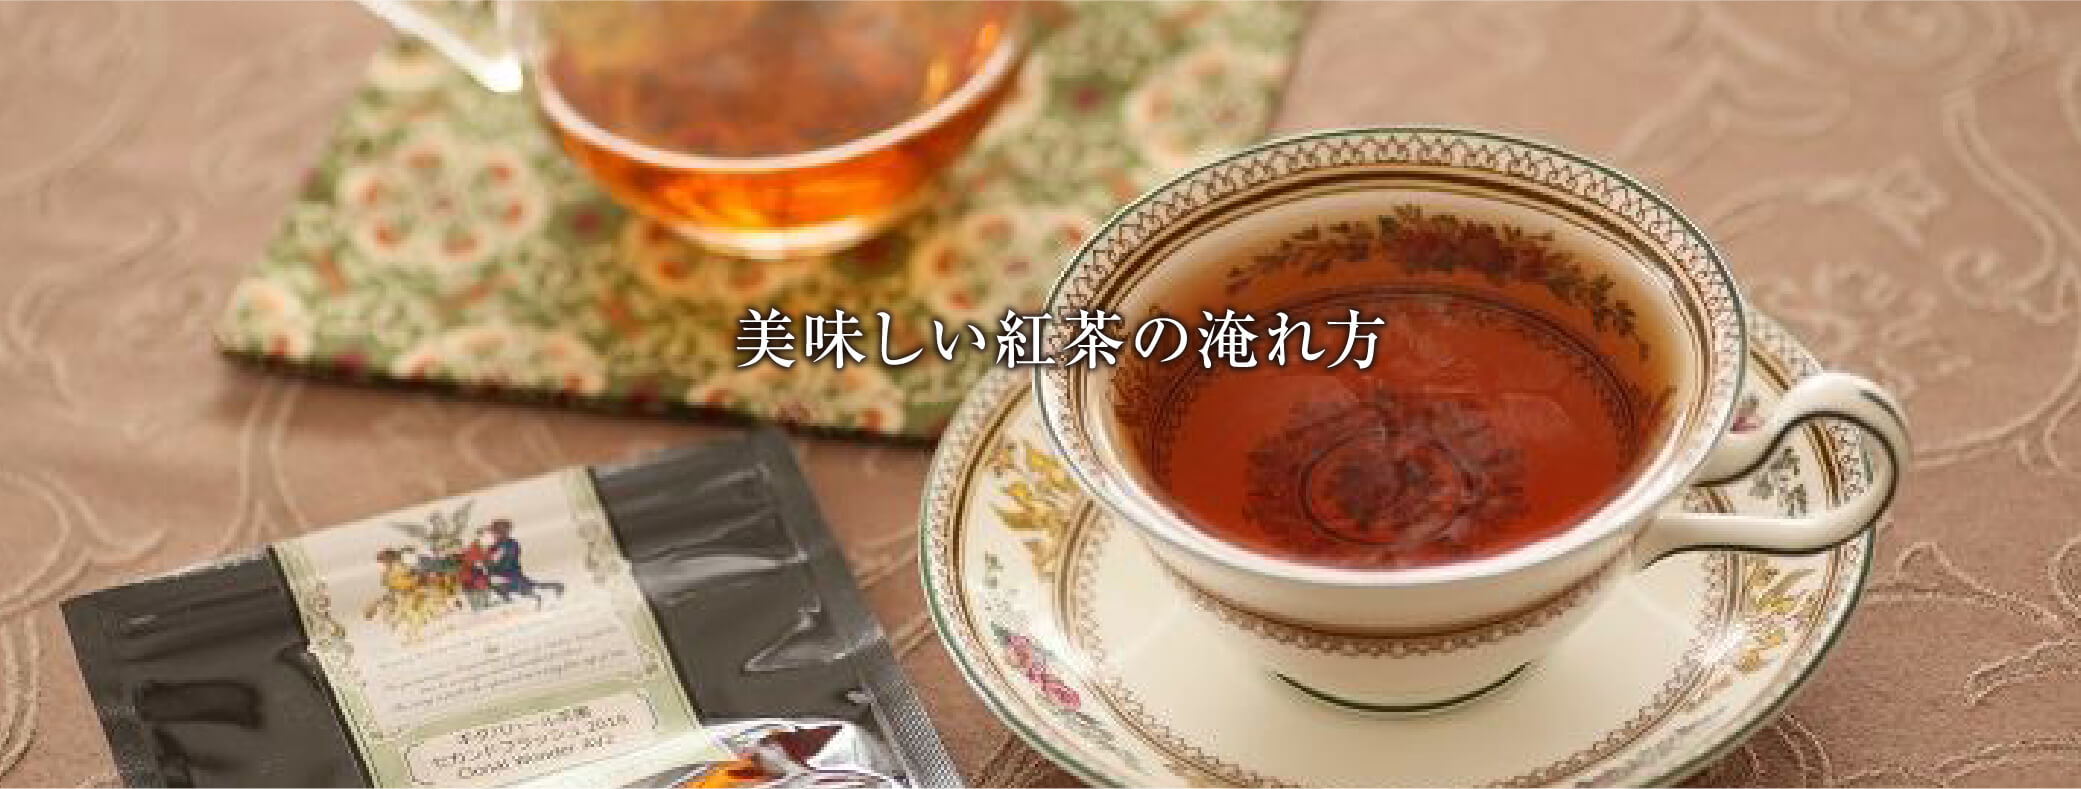 美味しい紅茶の淹れ方 ダージリン紅茶の写真